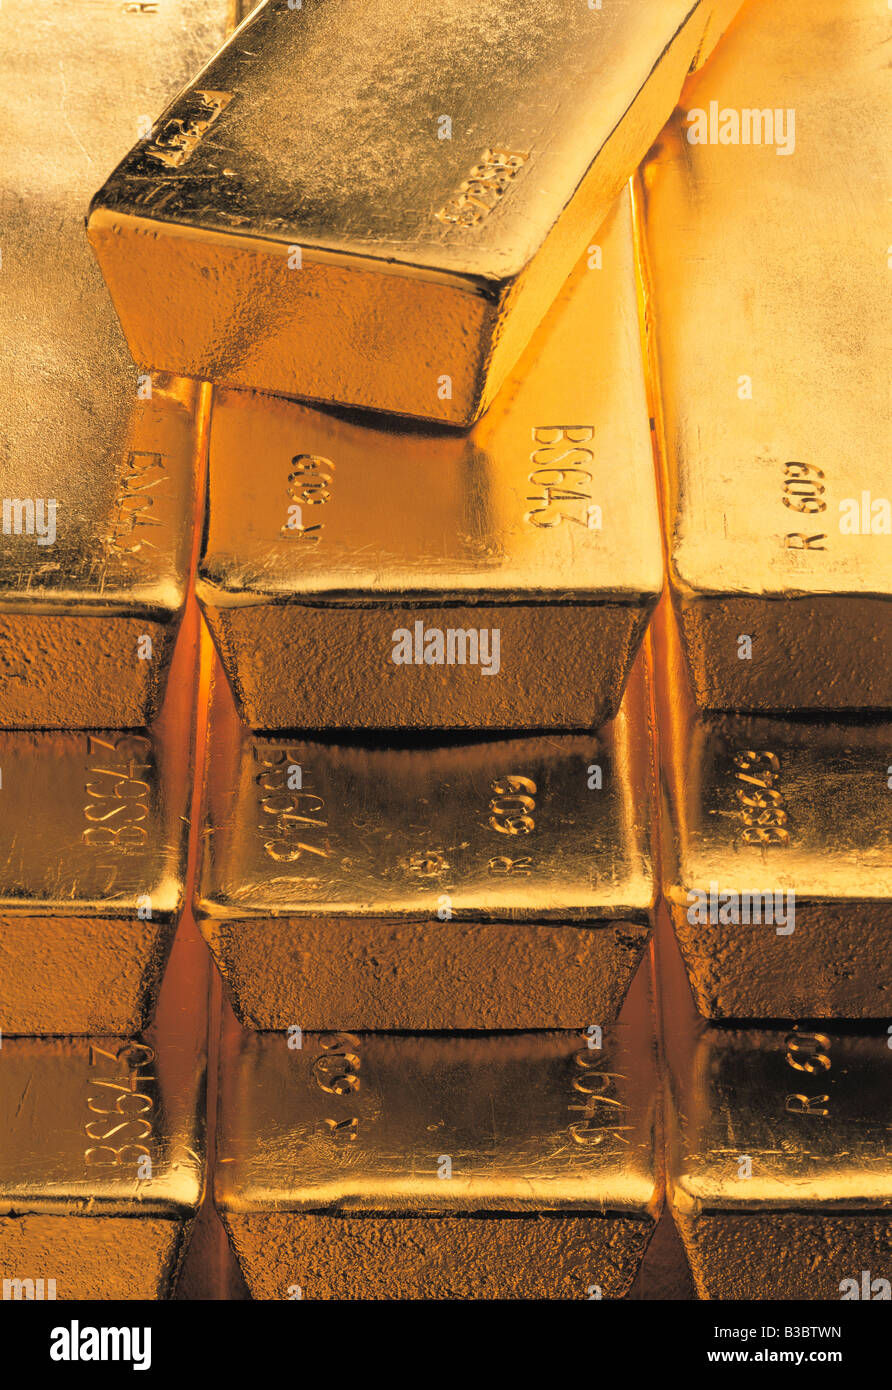 Close-up of gold bars empilés Banque D'Images